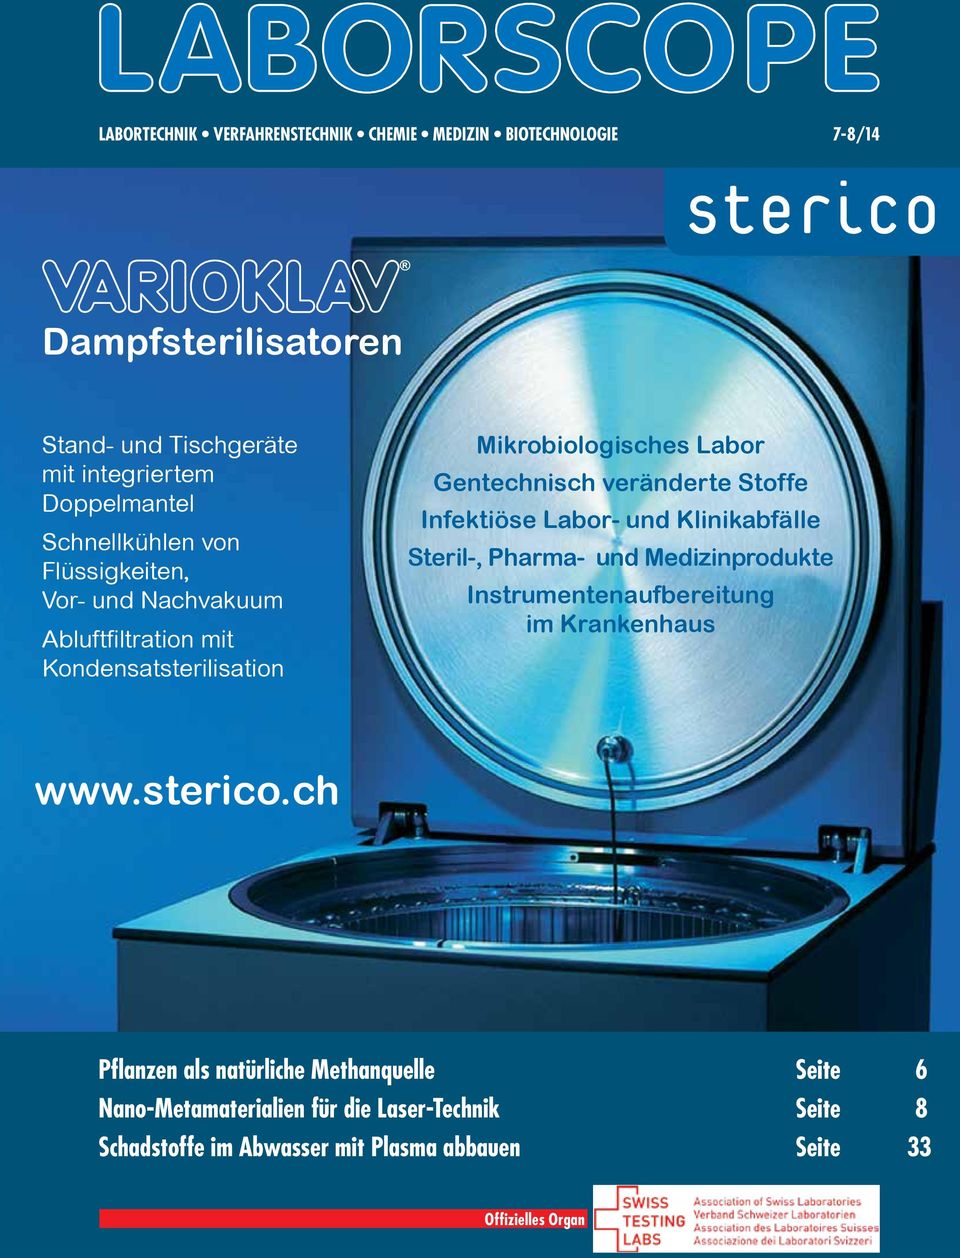 Klinikabfälle Steril-, Pharma- und Medizinprodukte Instrumentenaufbereitung im Krankenhaus www.sterico.